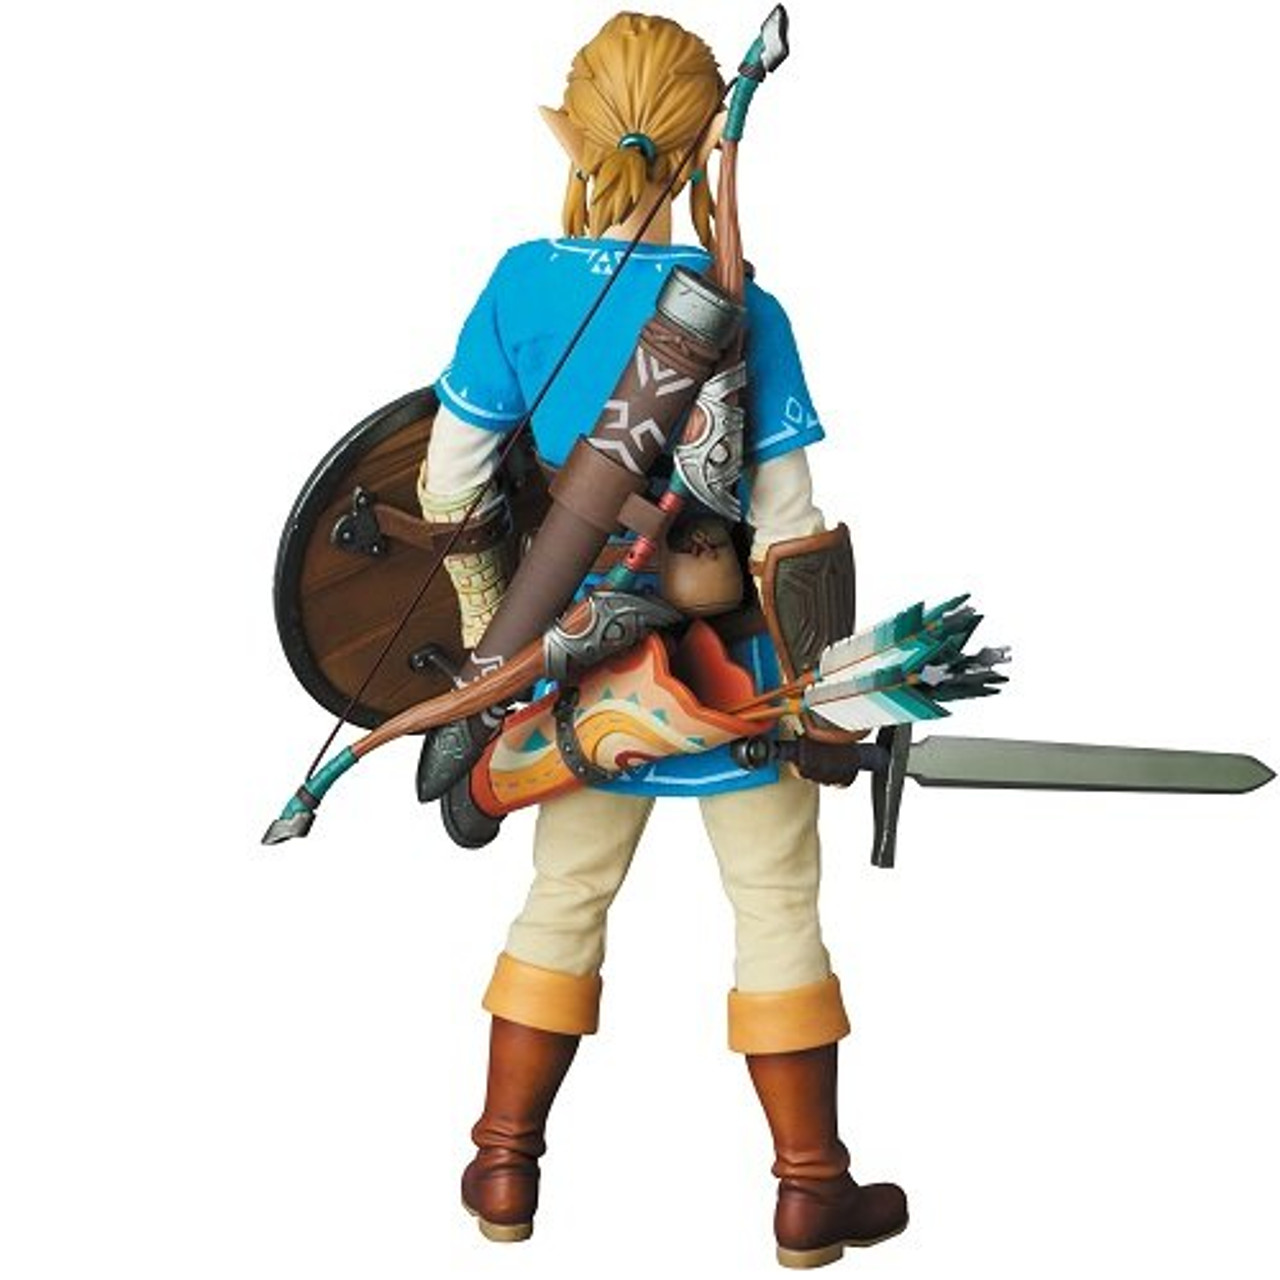 The Legend of Zelda Breath of the Wild Zelda Link Action Figure